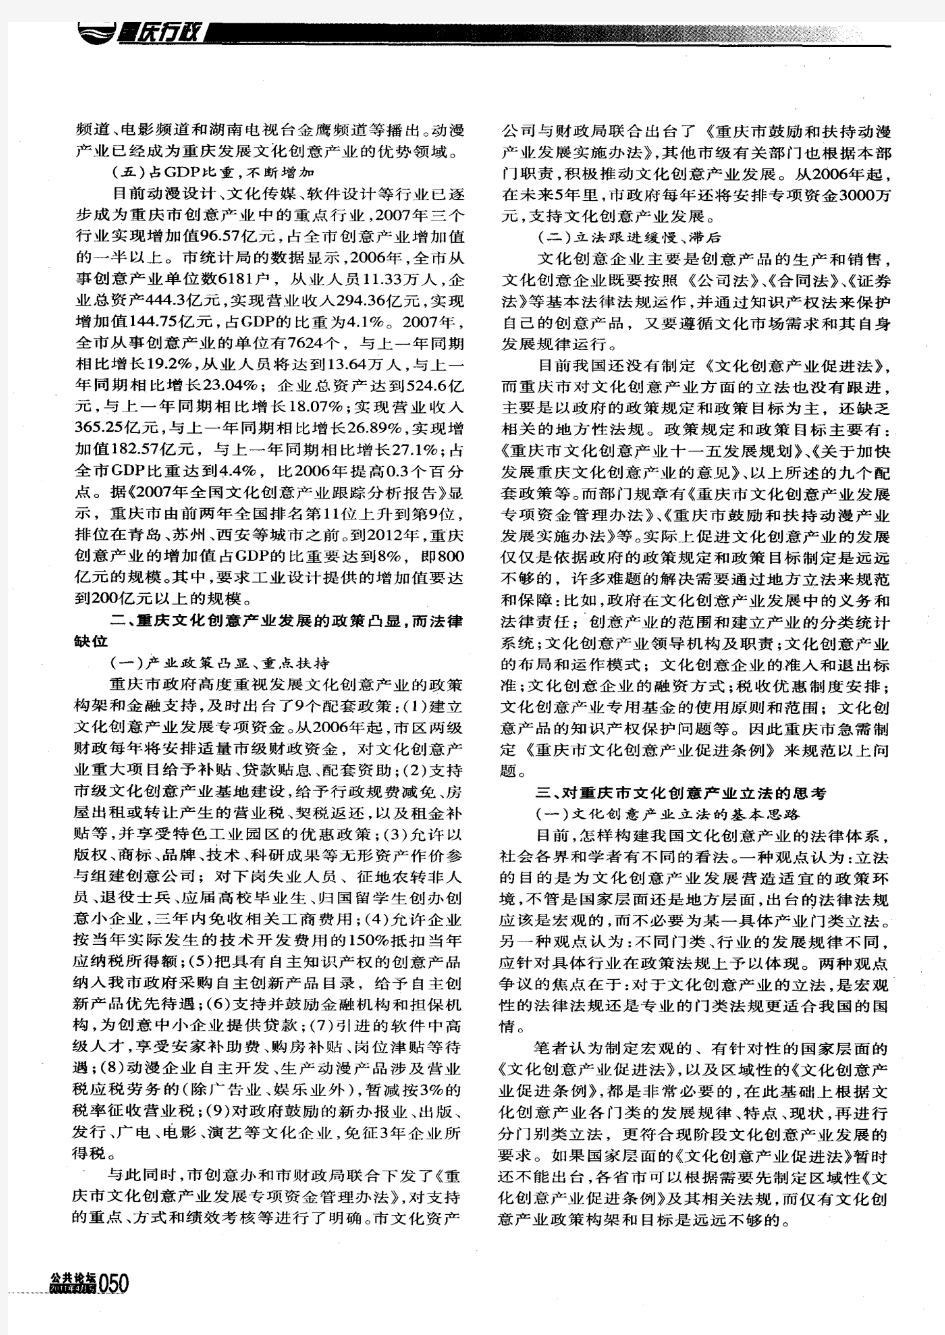 重庆市文化创意产业立法研究